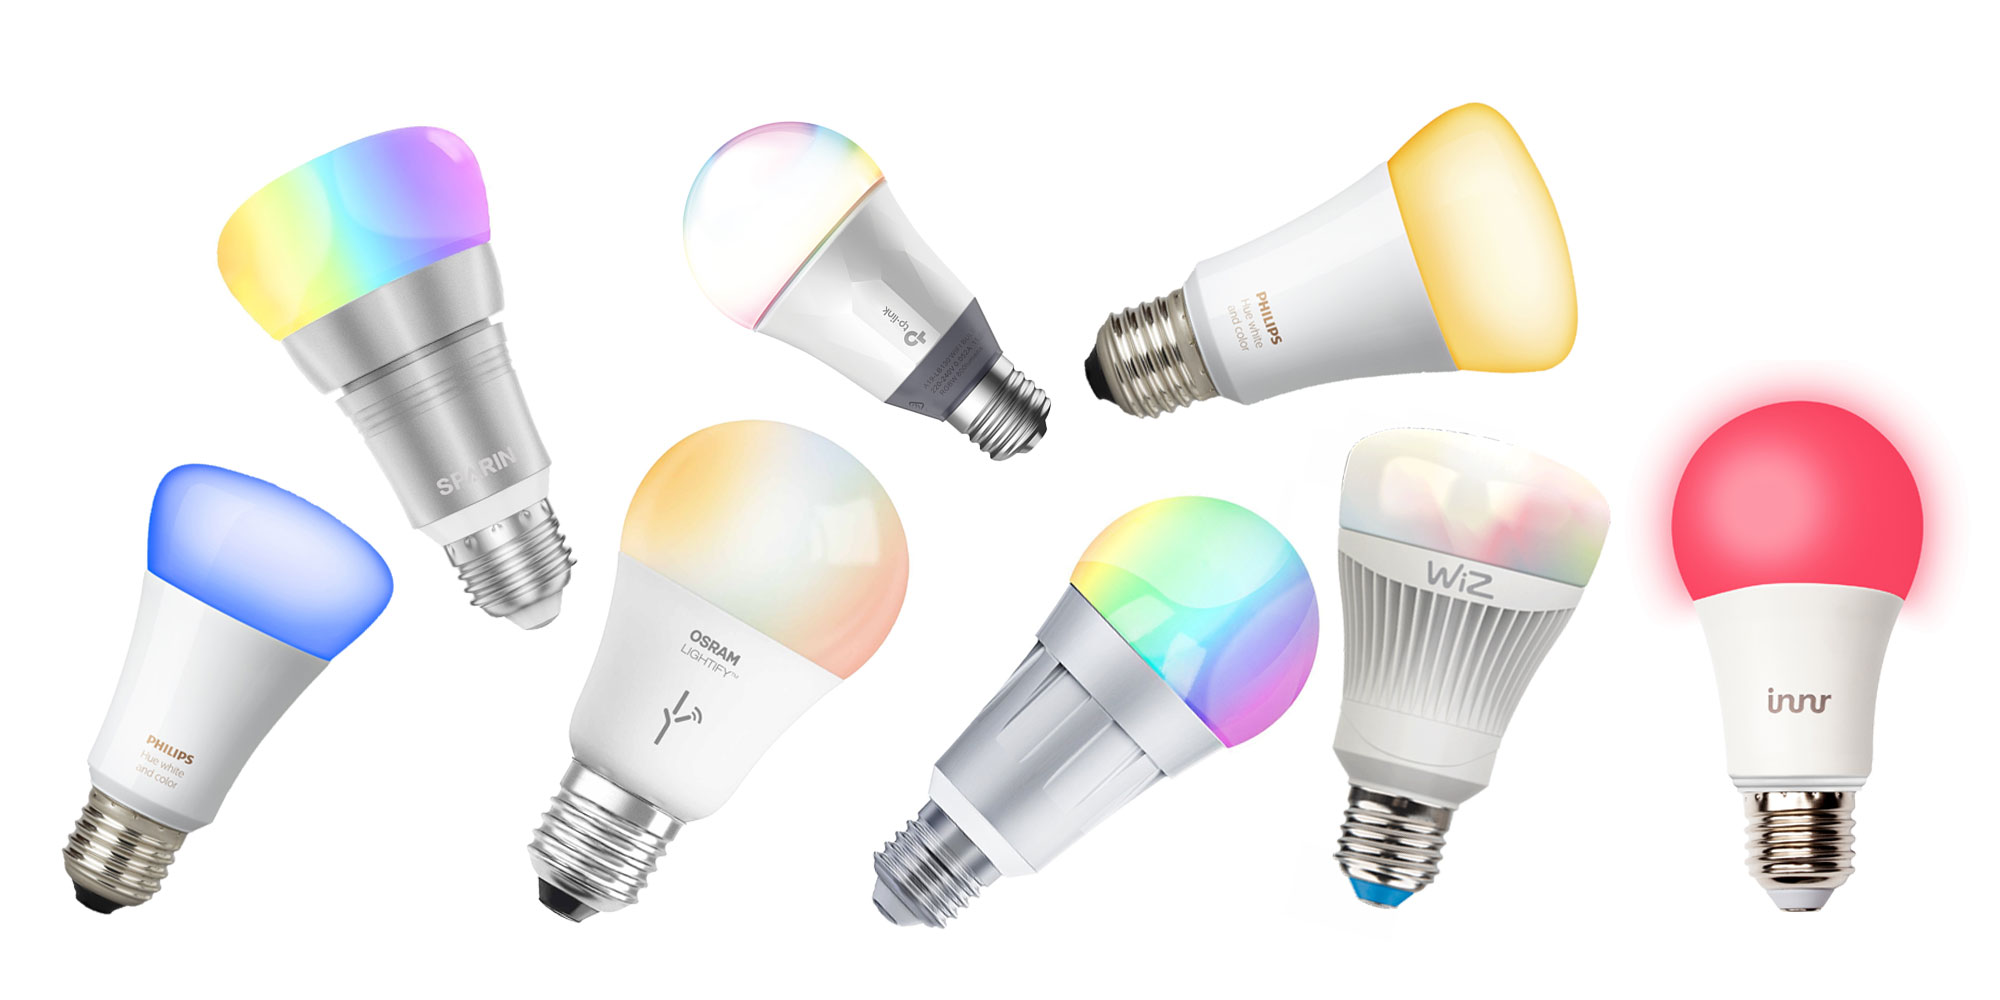 Nooie Smart Lampe WLAN Glühbirnen Wifi LED Weiches Weiß 2800K+RGB Birne 10W 80 